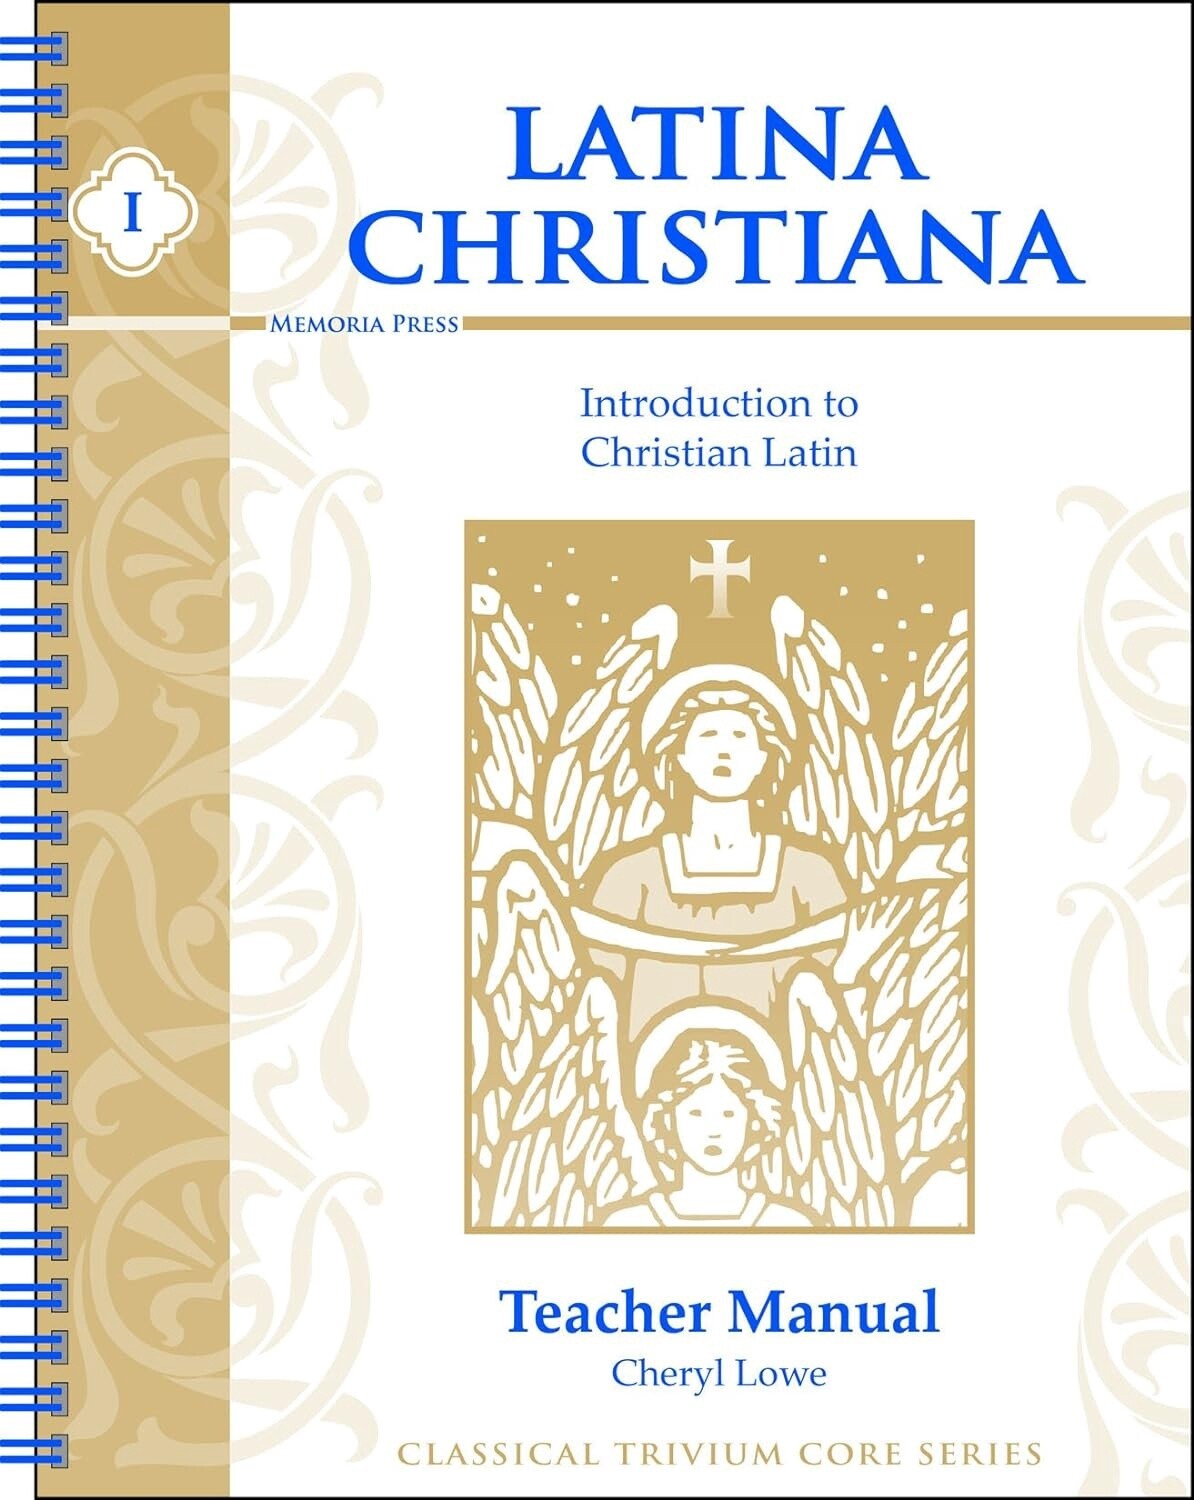 Latina Christiana, Book I: Introduction to Christian Latin, Teacher Manual